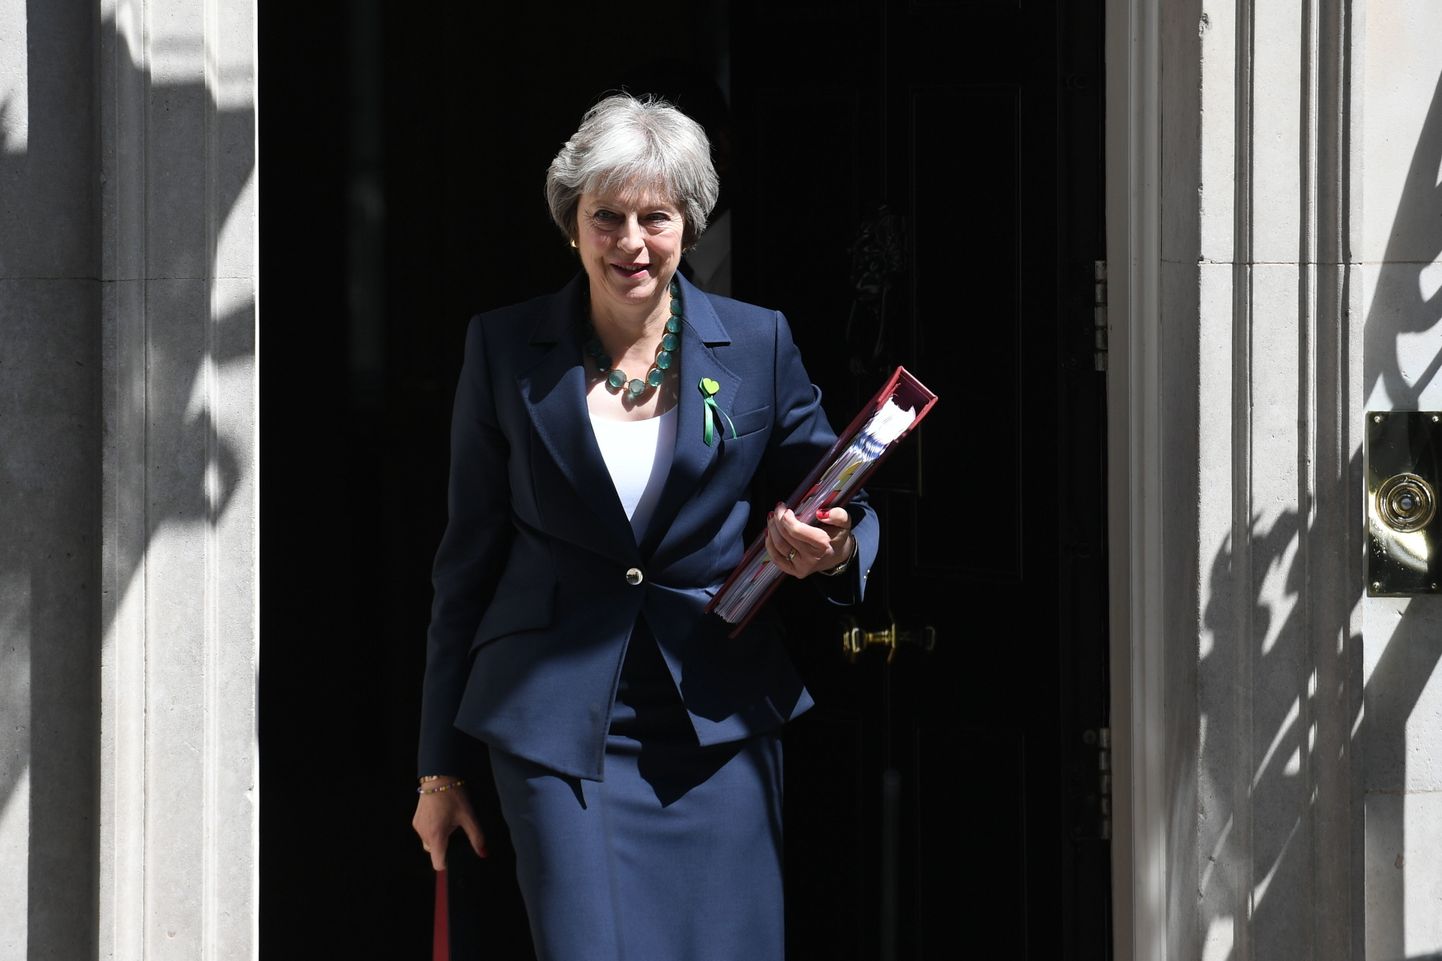 Suurbritannia peaminister Theresa May suundumas Parlamendi alamkotta küsimustele vastama.